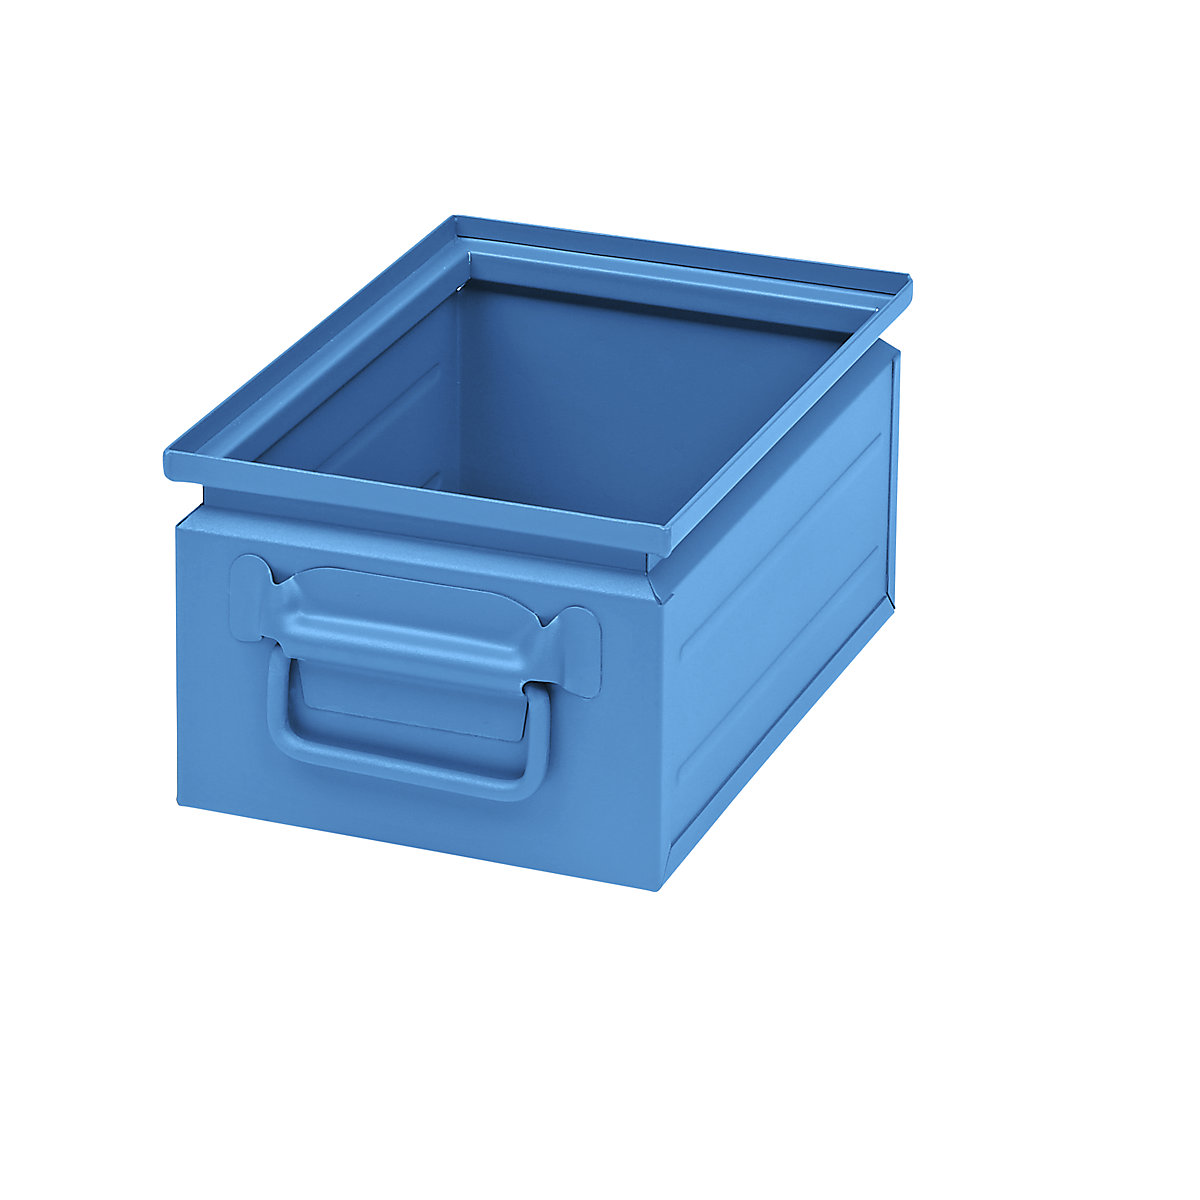 Stapelkasten aus Stahlblech, Volumen ca. 9 l, lichtblau RAL 5012-4